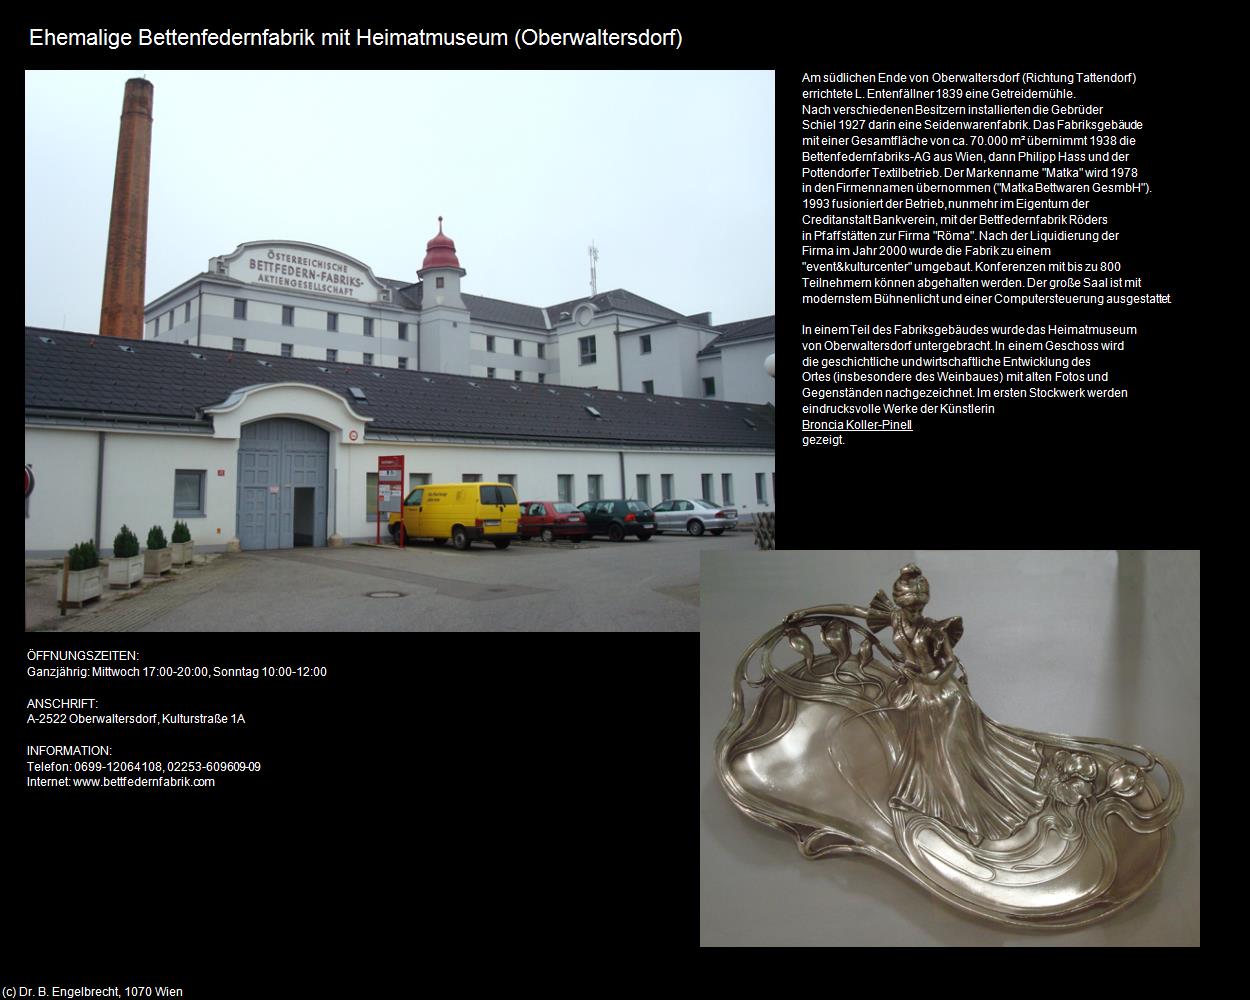 Ehem. Bettenfedernfabrik mit Heimatmuseum  (Oberwaltersdorf) in Kulturatlas-NIEDERÖSTERREICH(c)B.Engelbrecht